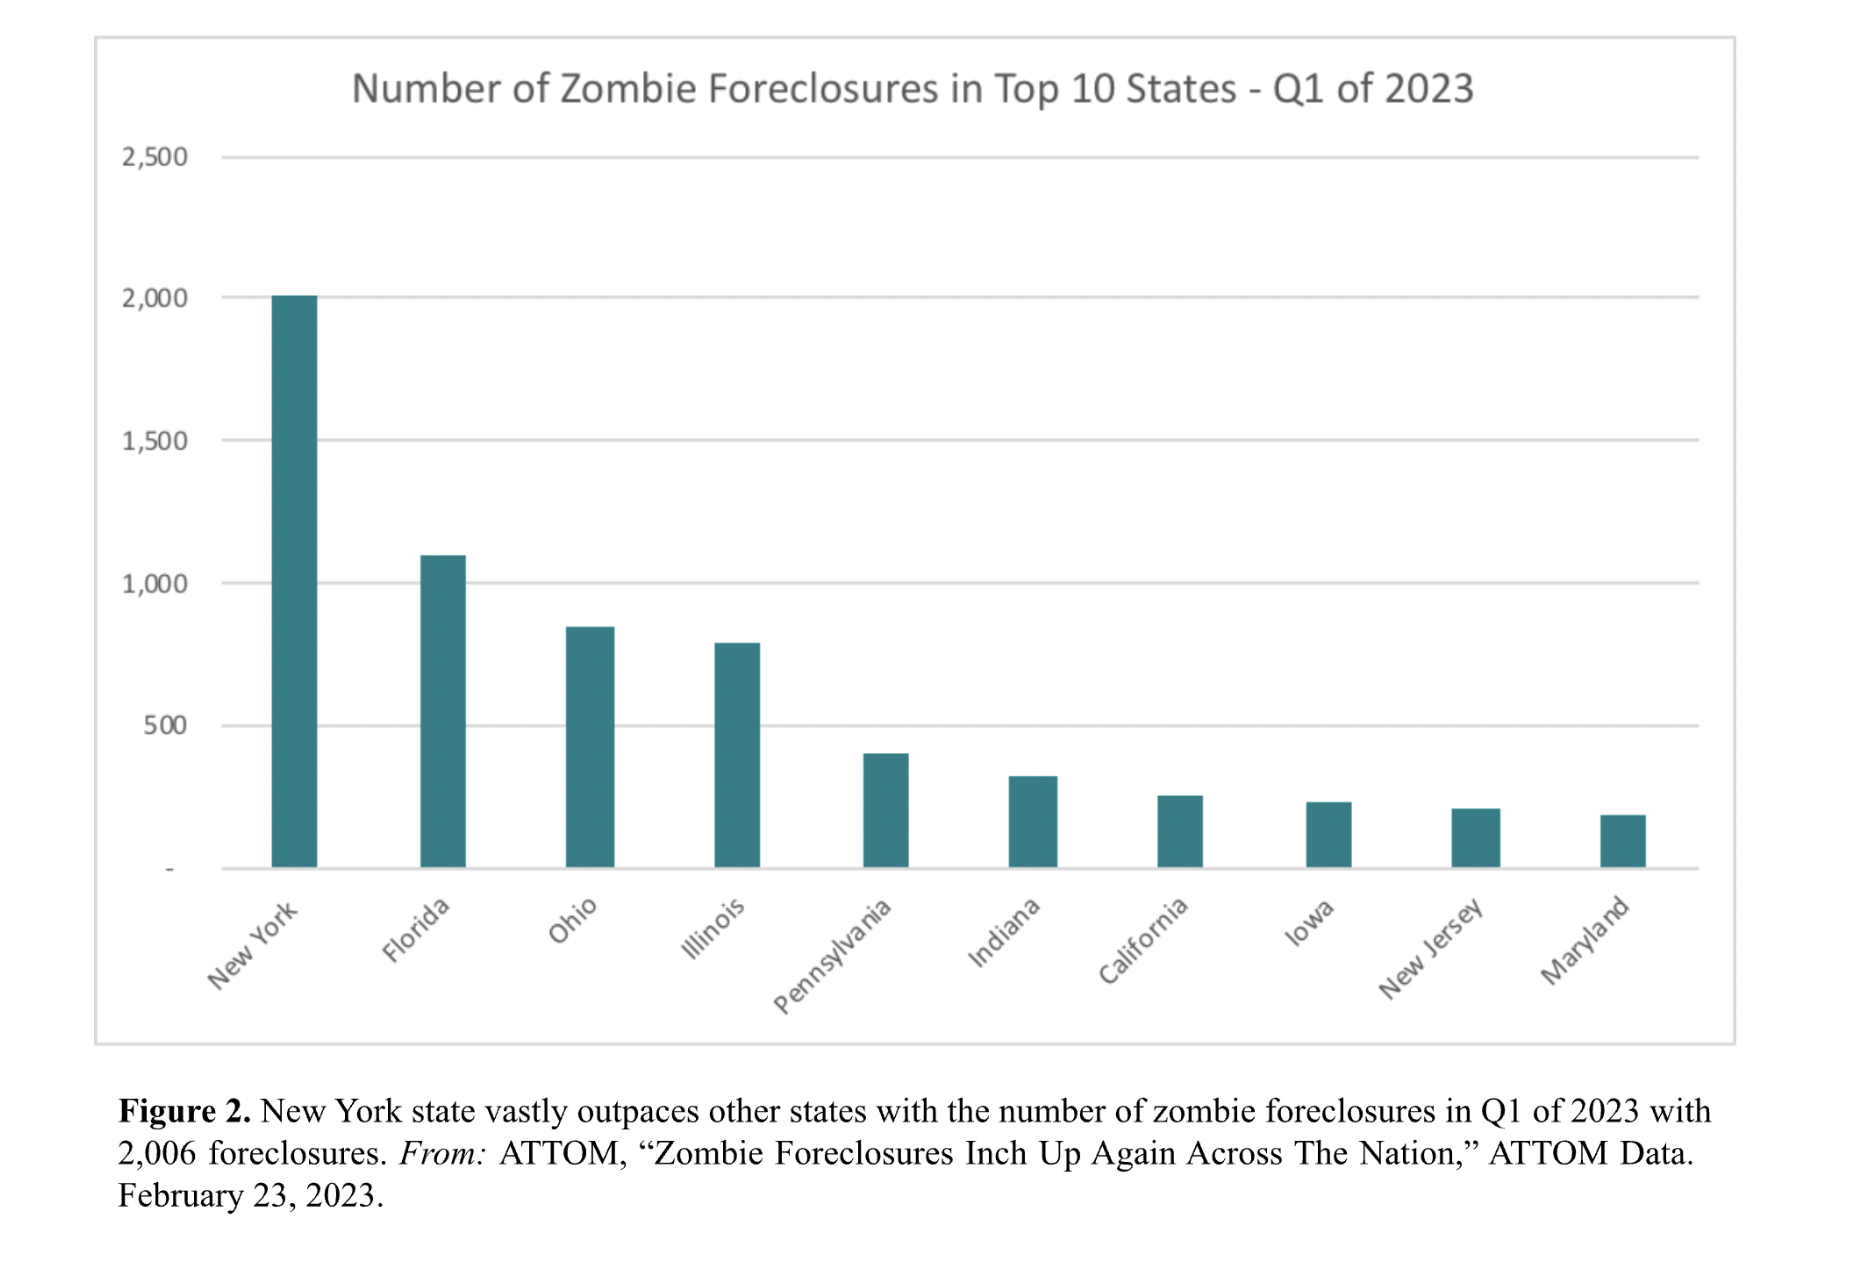 Zombie Foreclosures